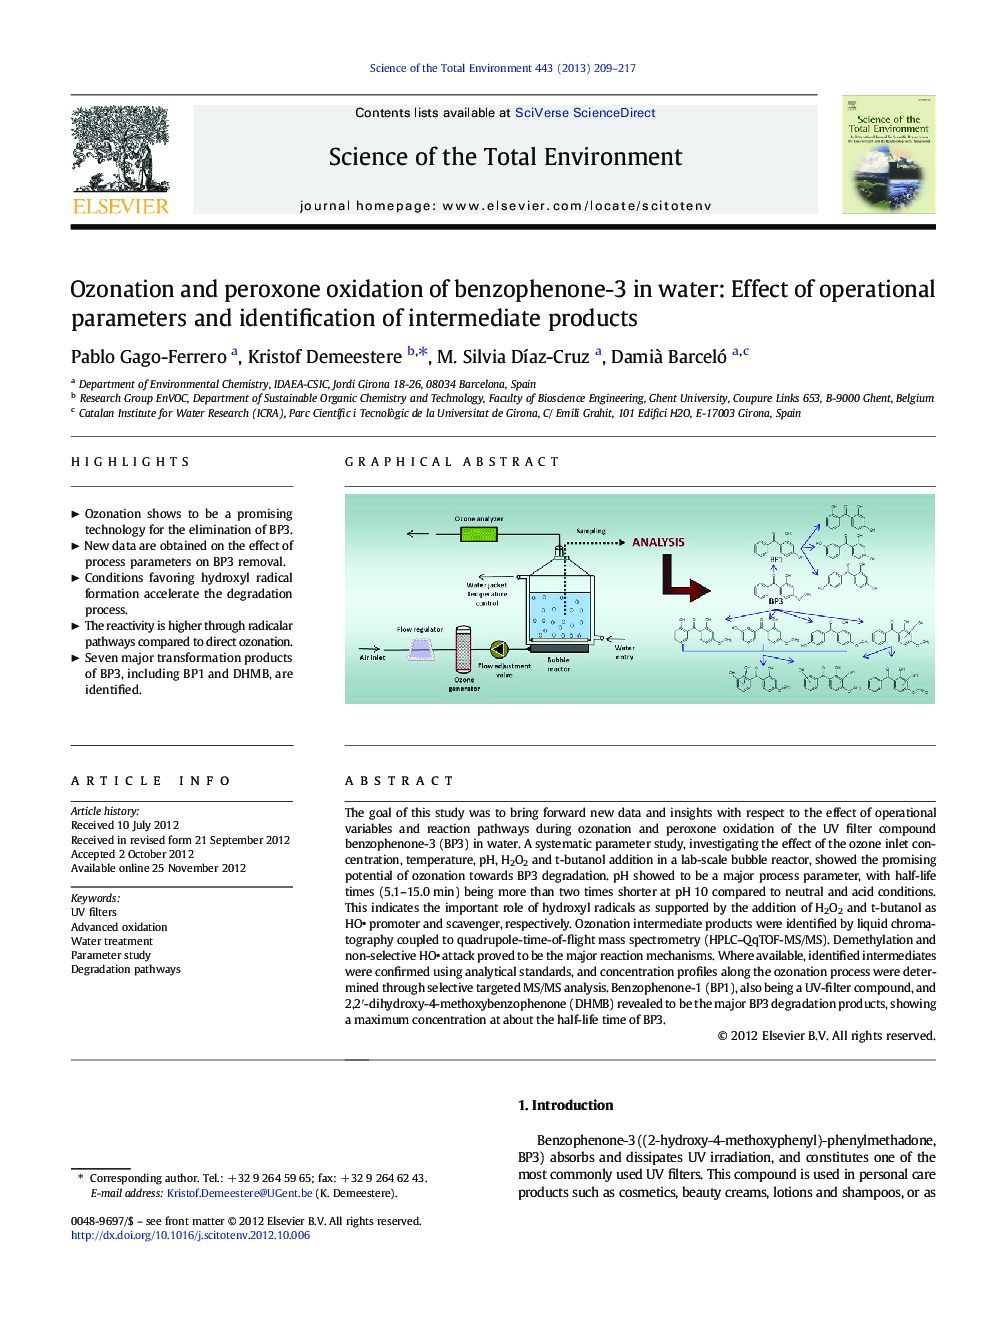 استحکام و پراکسون اکسیداسیون بنزوفنون-3 در آب: اثر پارامترهای عملیاتی و شناسایی محصولات میانی 